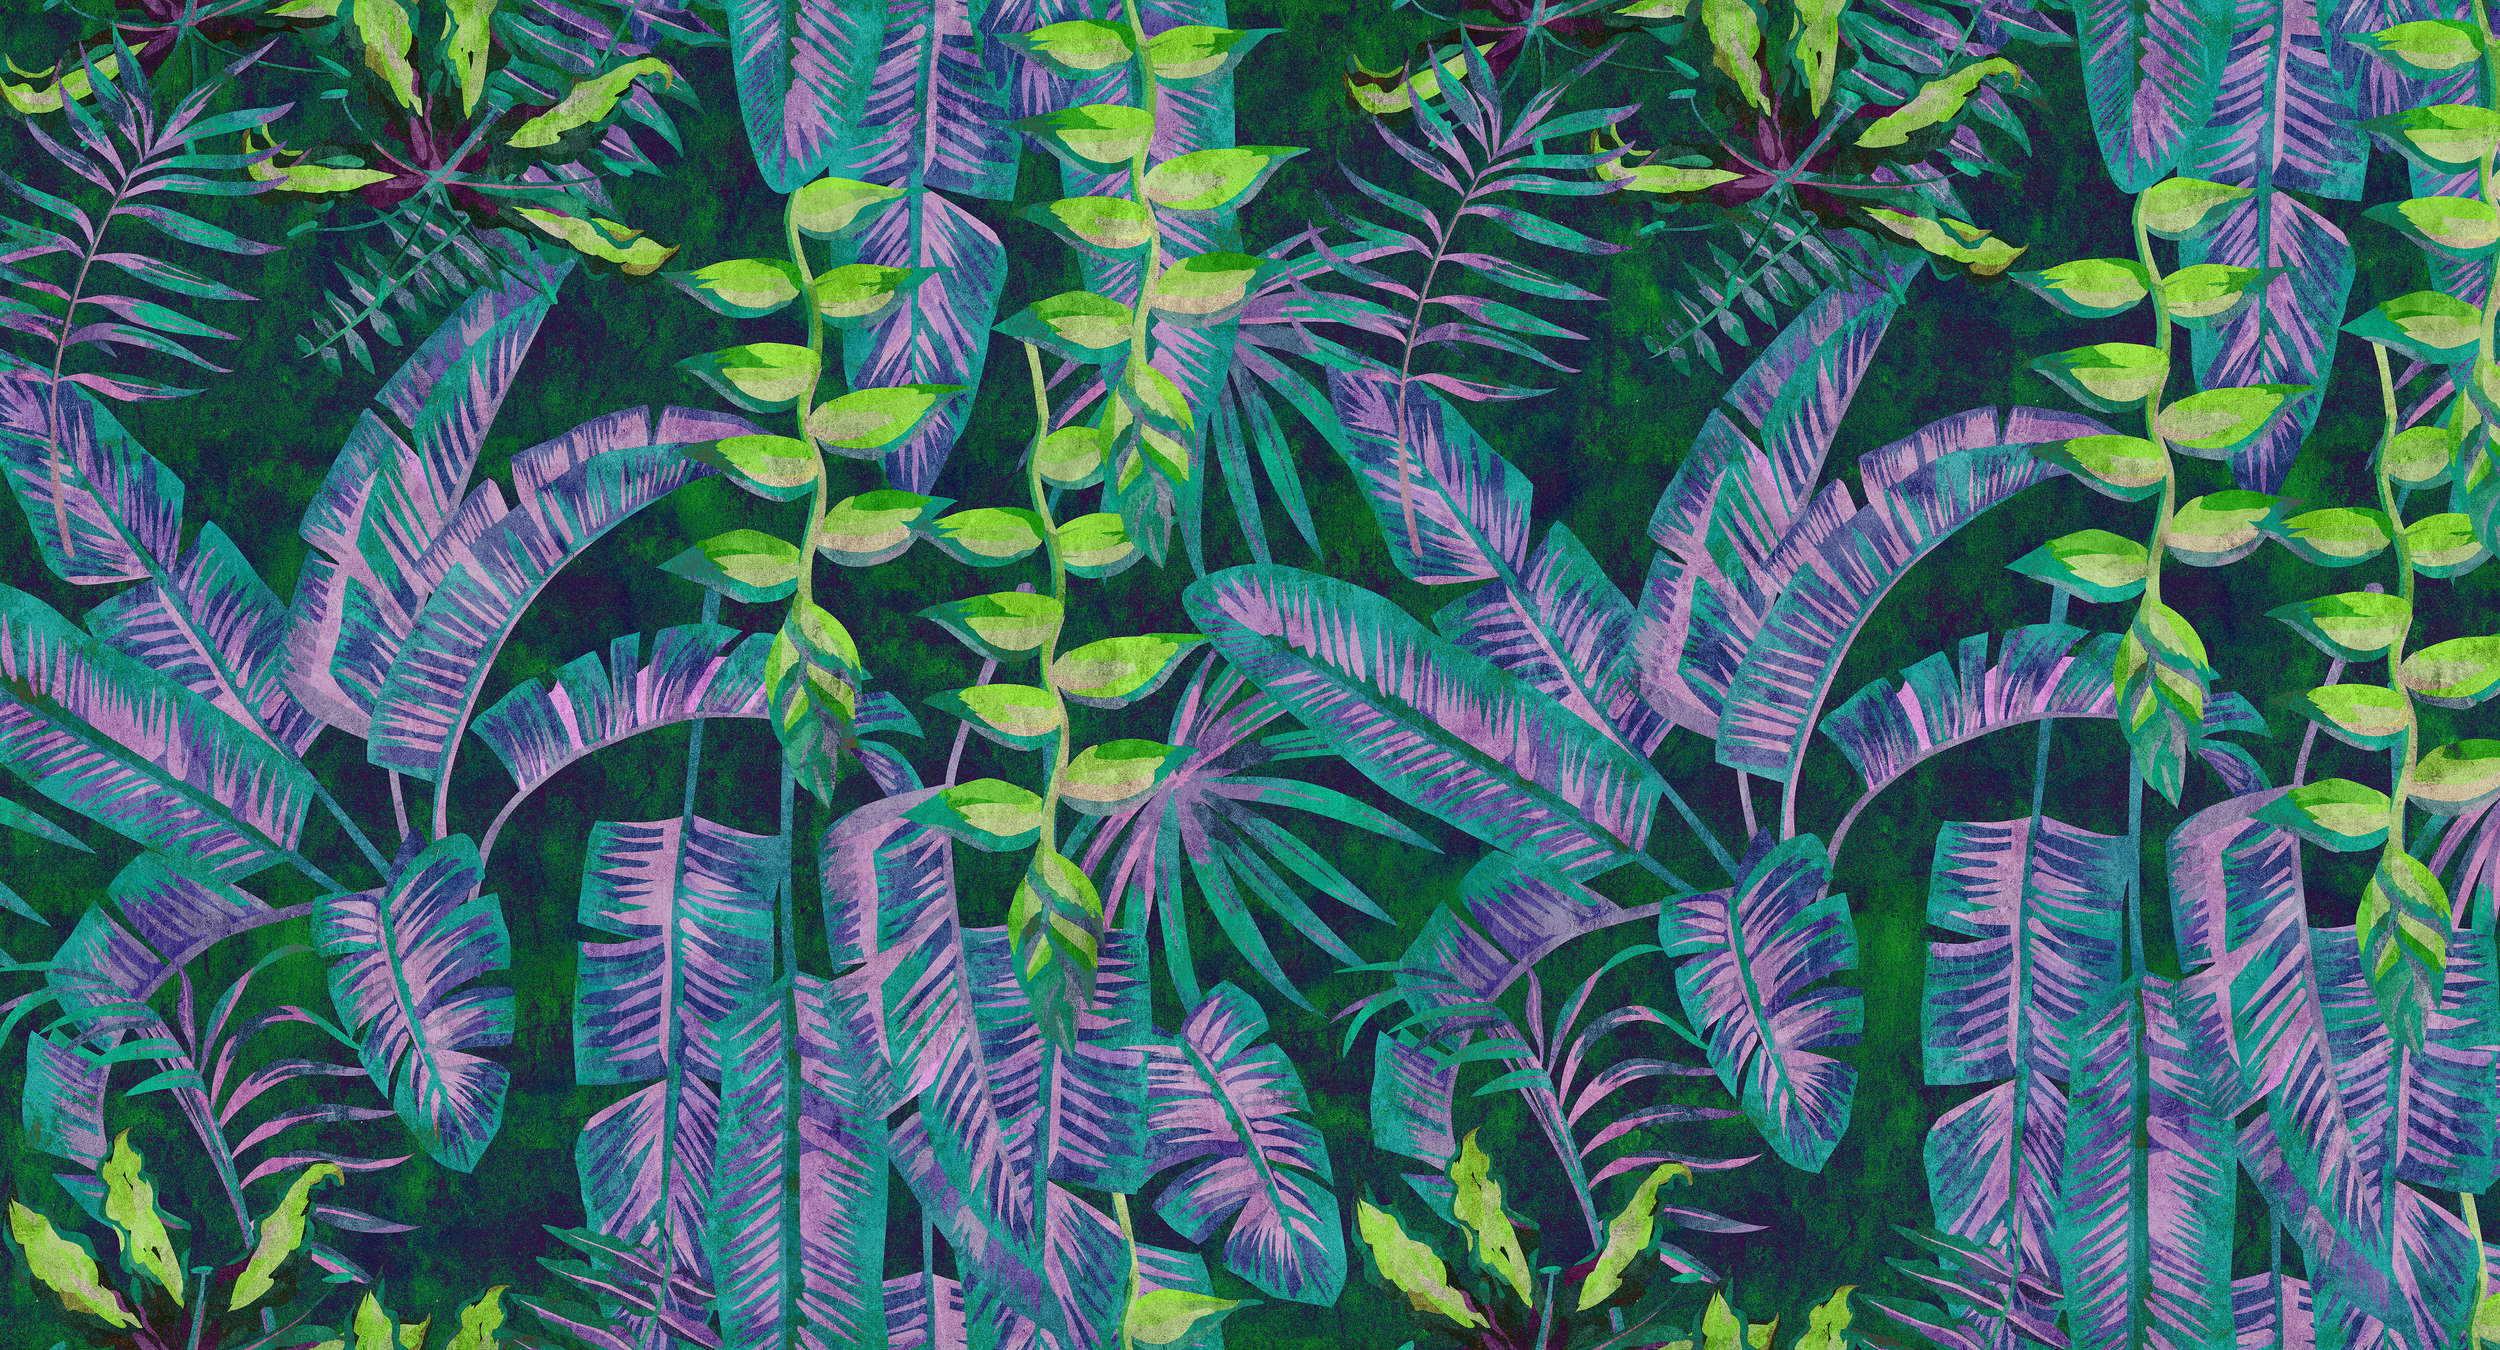             Tropicana 5 - Dschungel Fototapete mit Neon-Farben in Löschpapier Struktur – Blau, Grün | Struktur Vlies
        